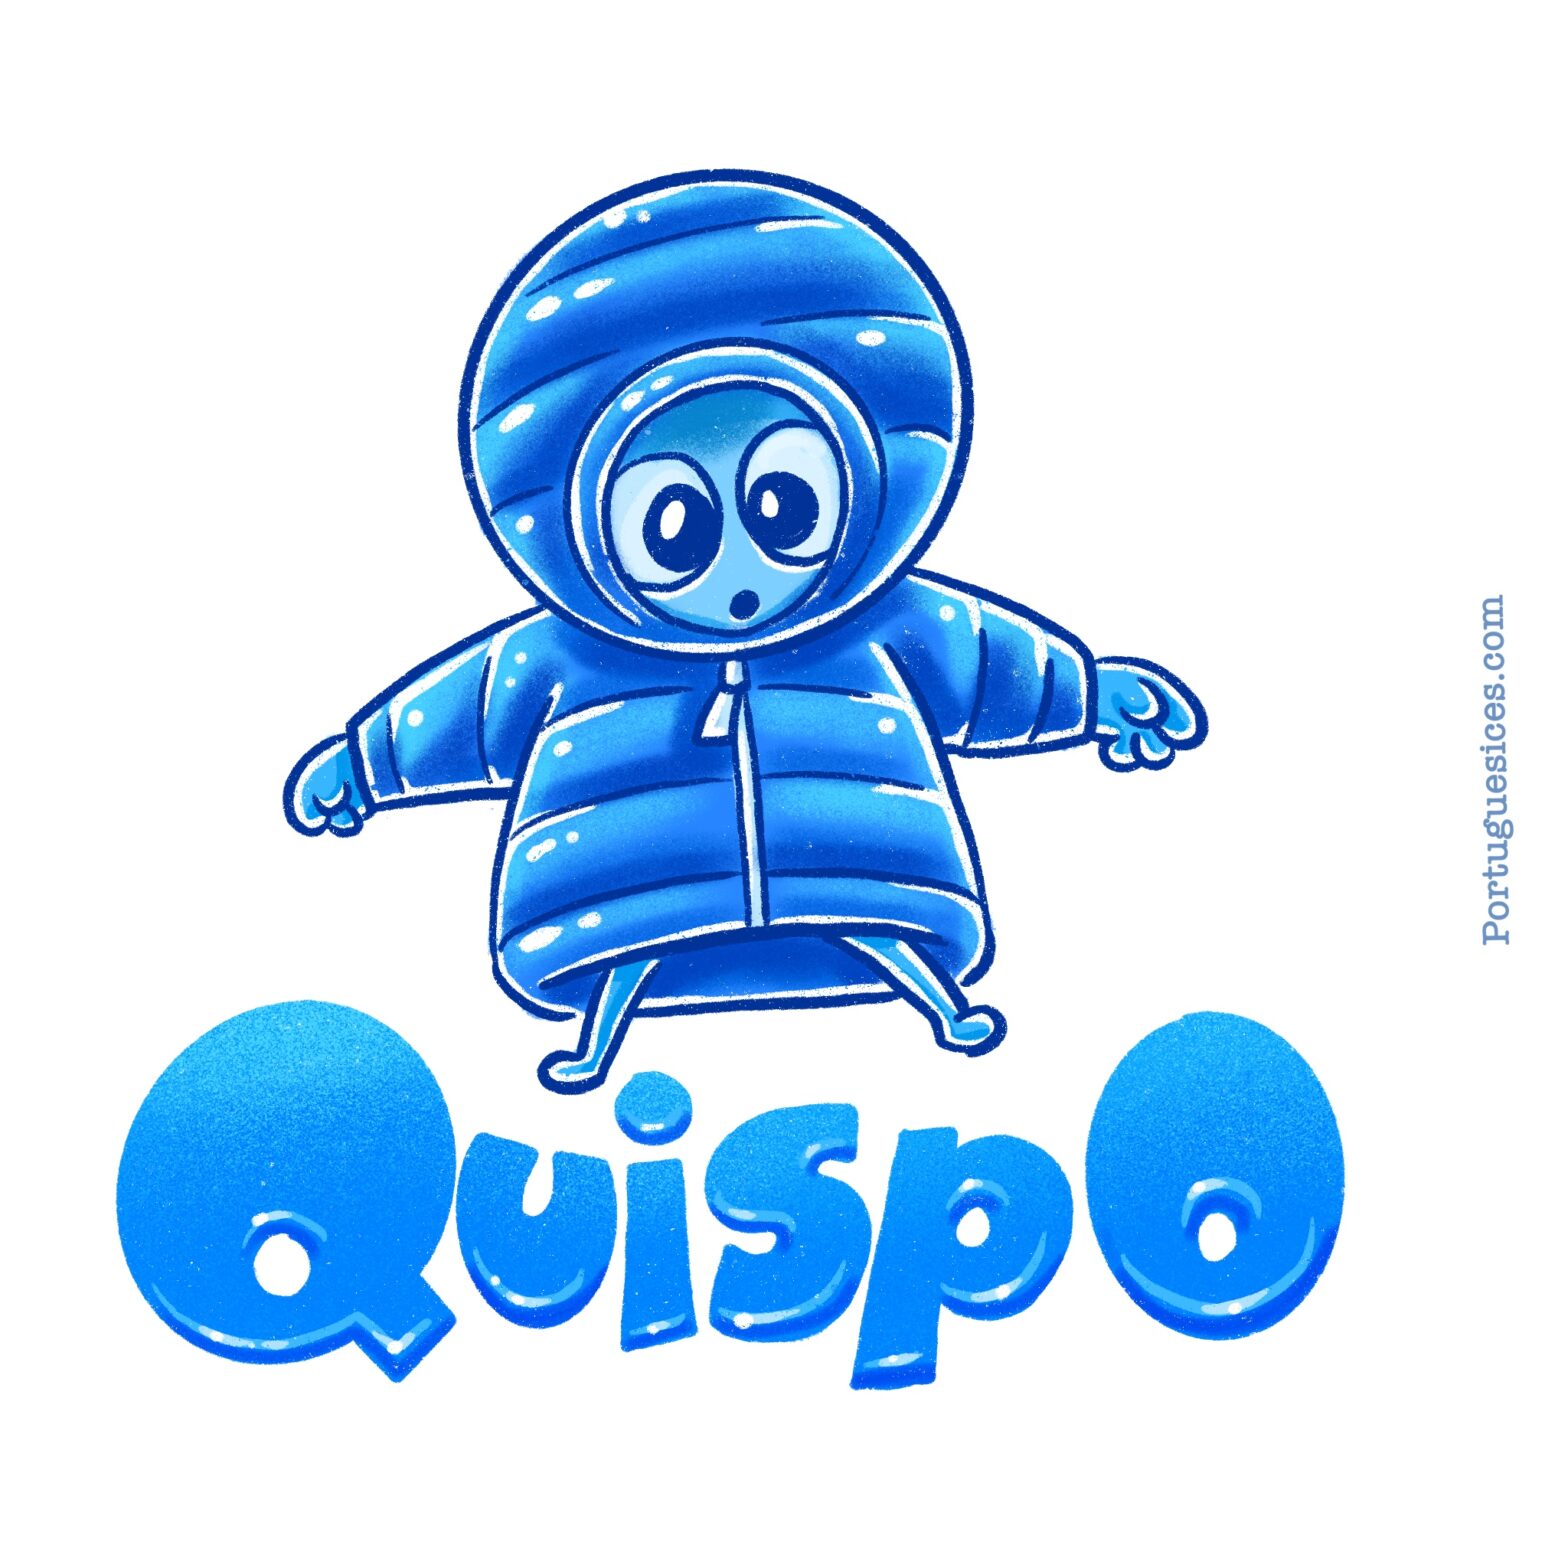 Quispo